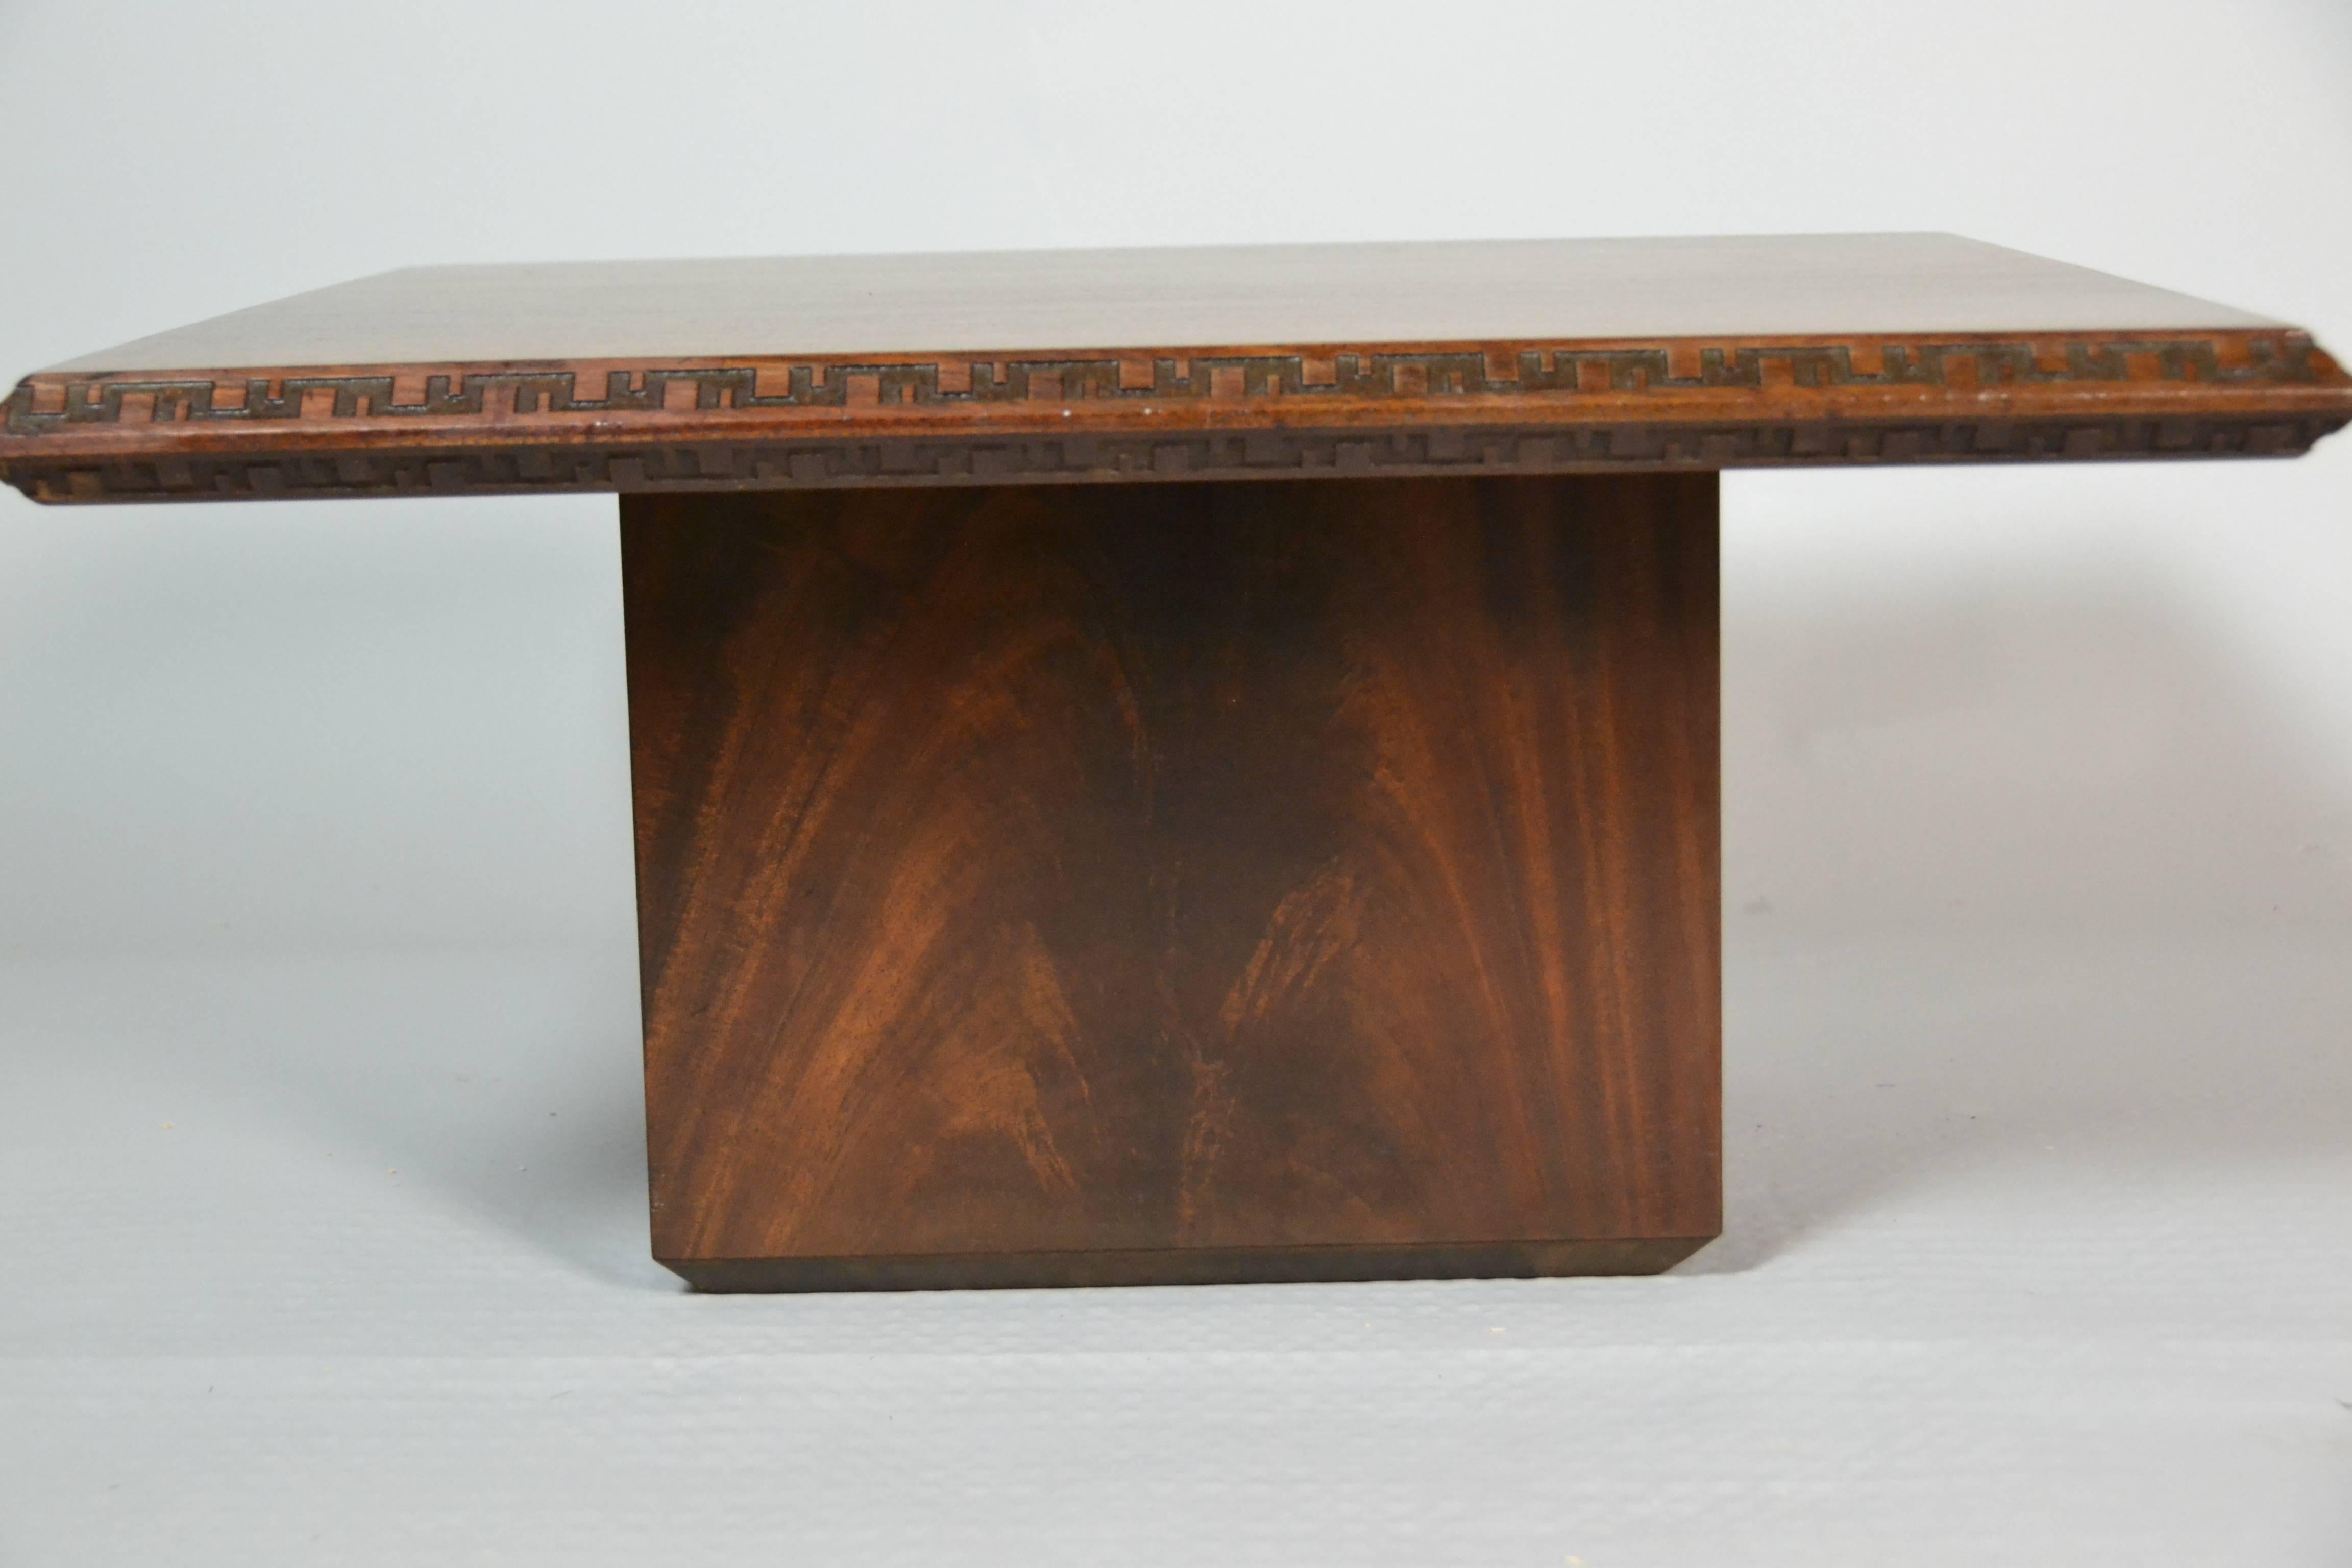 Ein Couchtisch oder Beistelltisch aus Mahagoni von Frank Lloyd Wright, entworfen von  für Heritage Henredon für ihre 1955 eingeführte Taliesin-Linie.
Der Tisch ist in ausgezeichnetem Zustand.
 